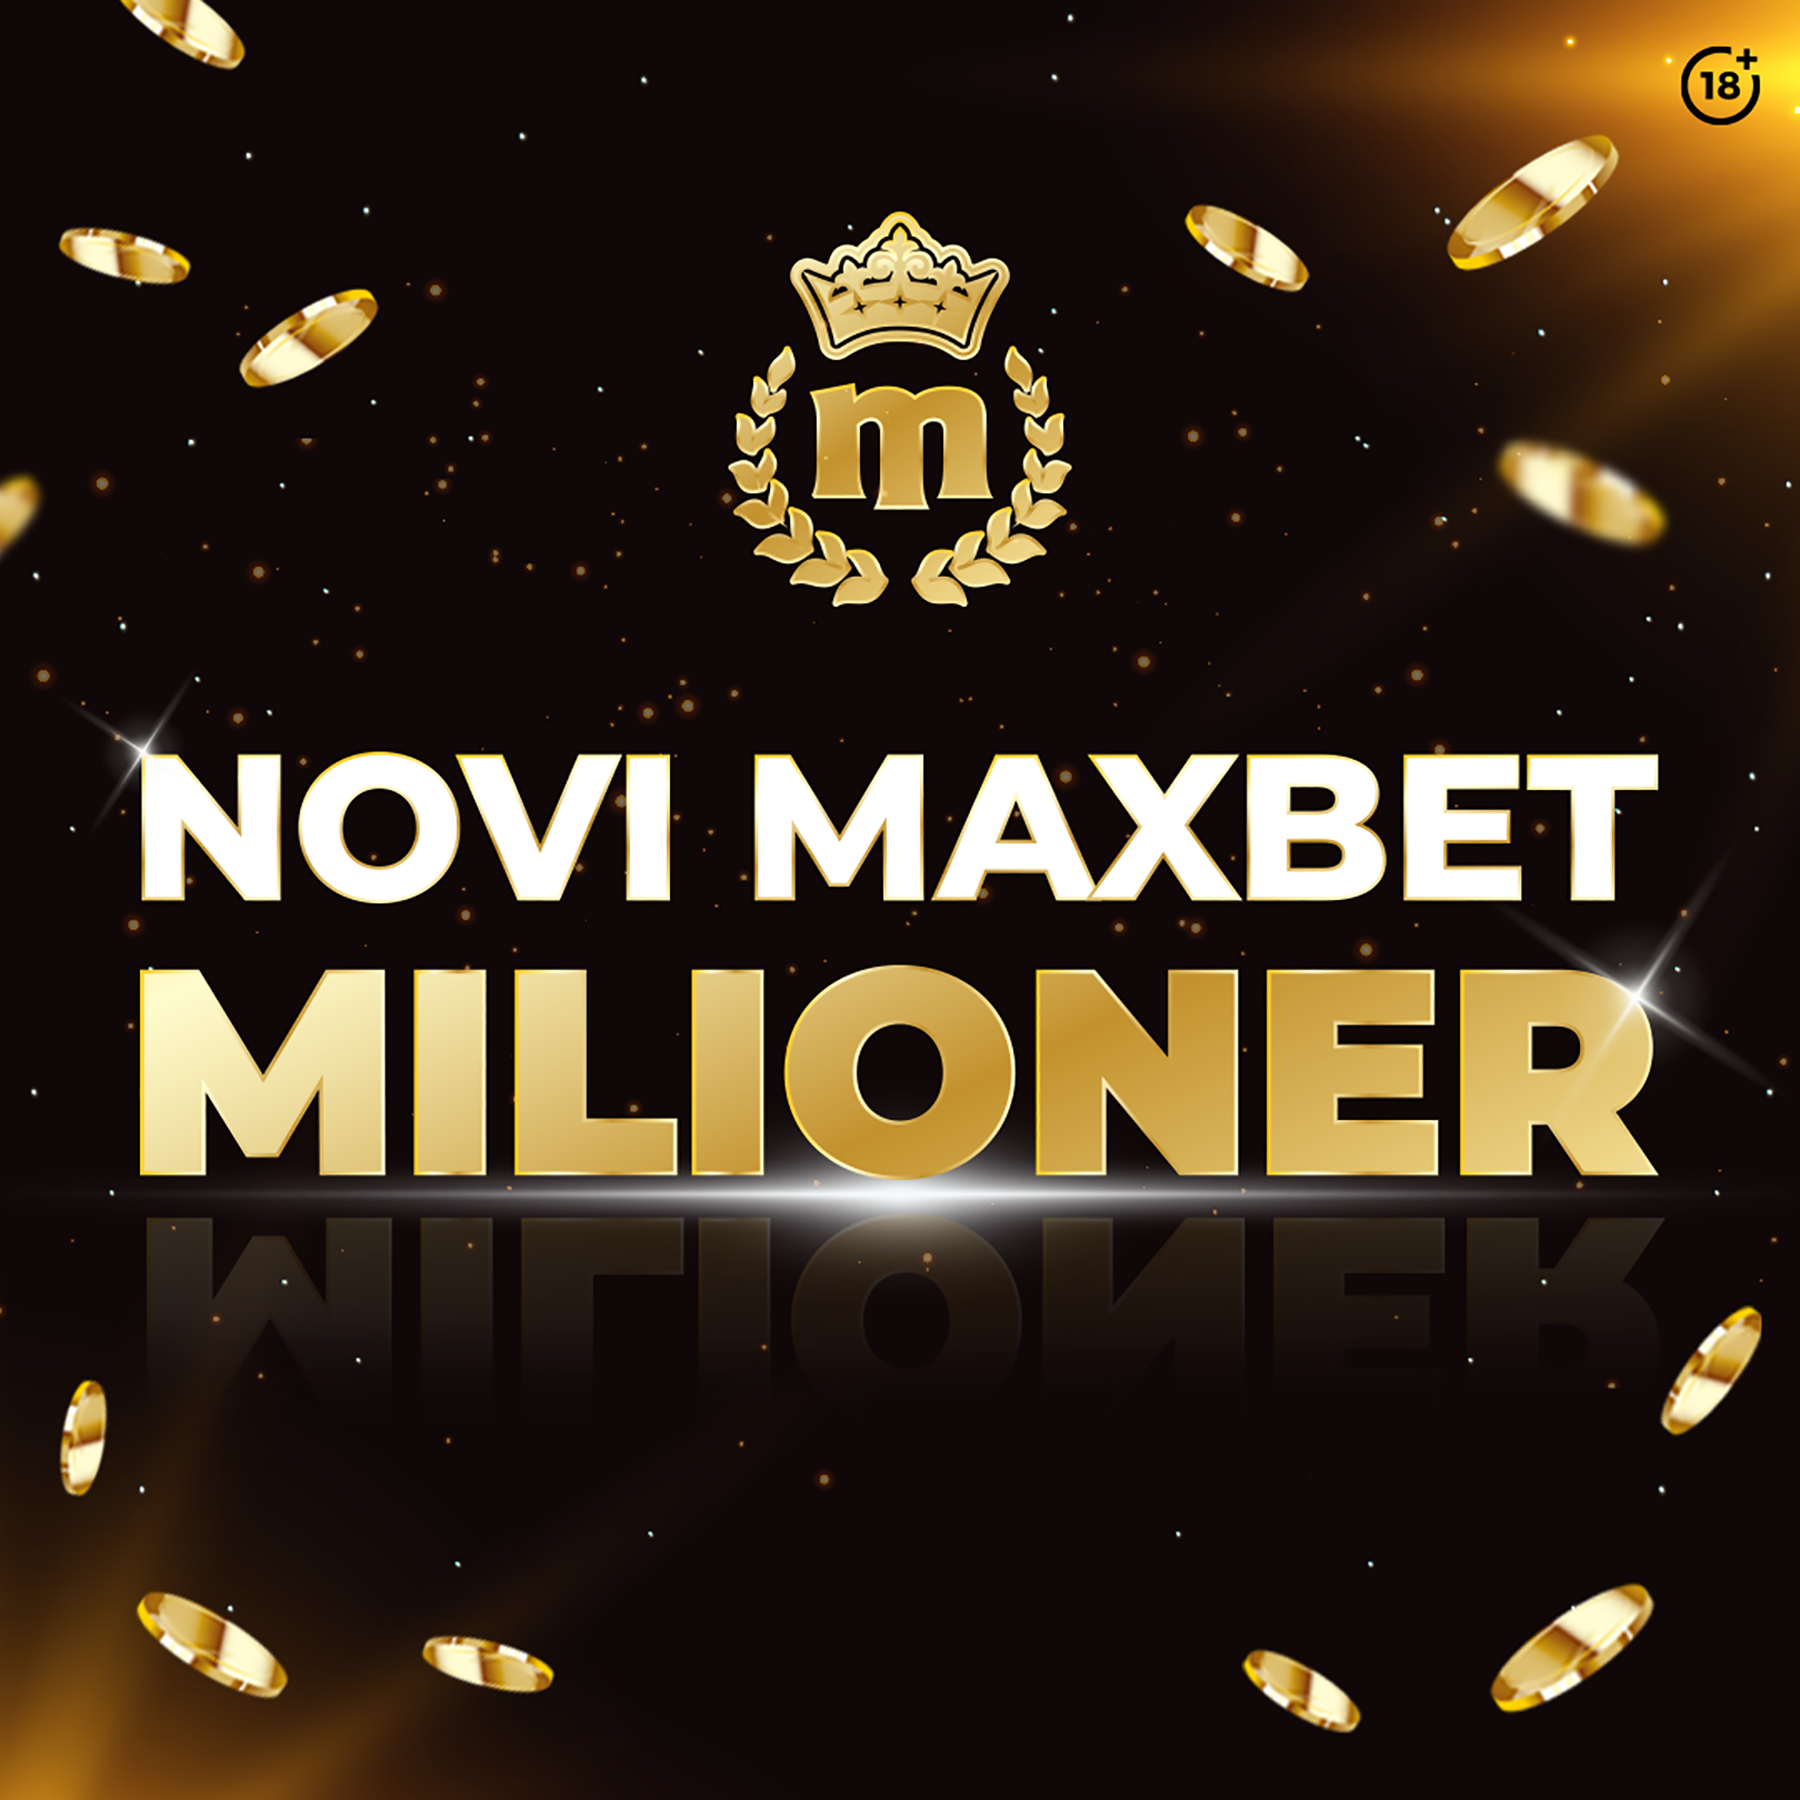 MaxBet milioner